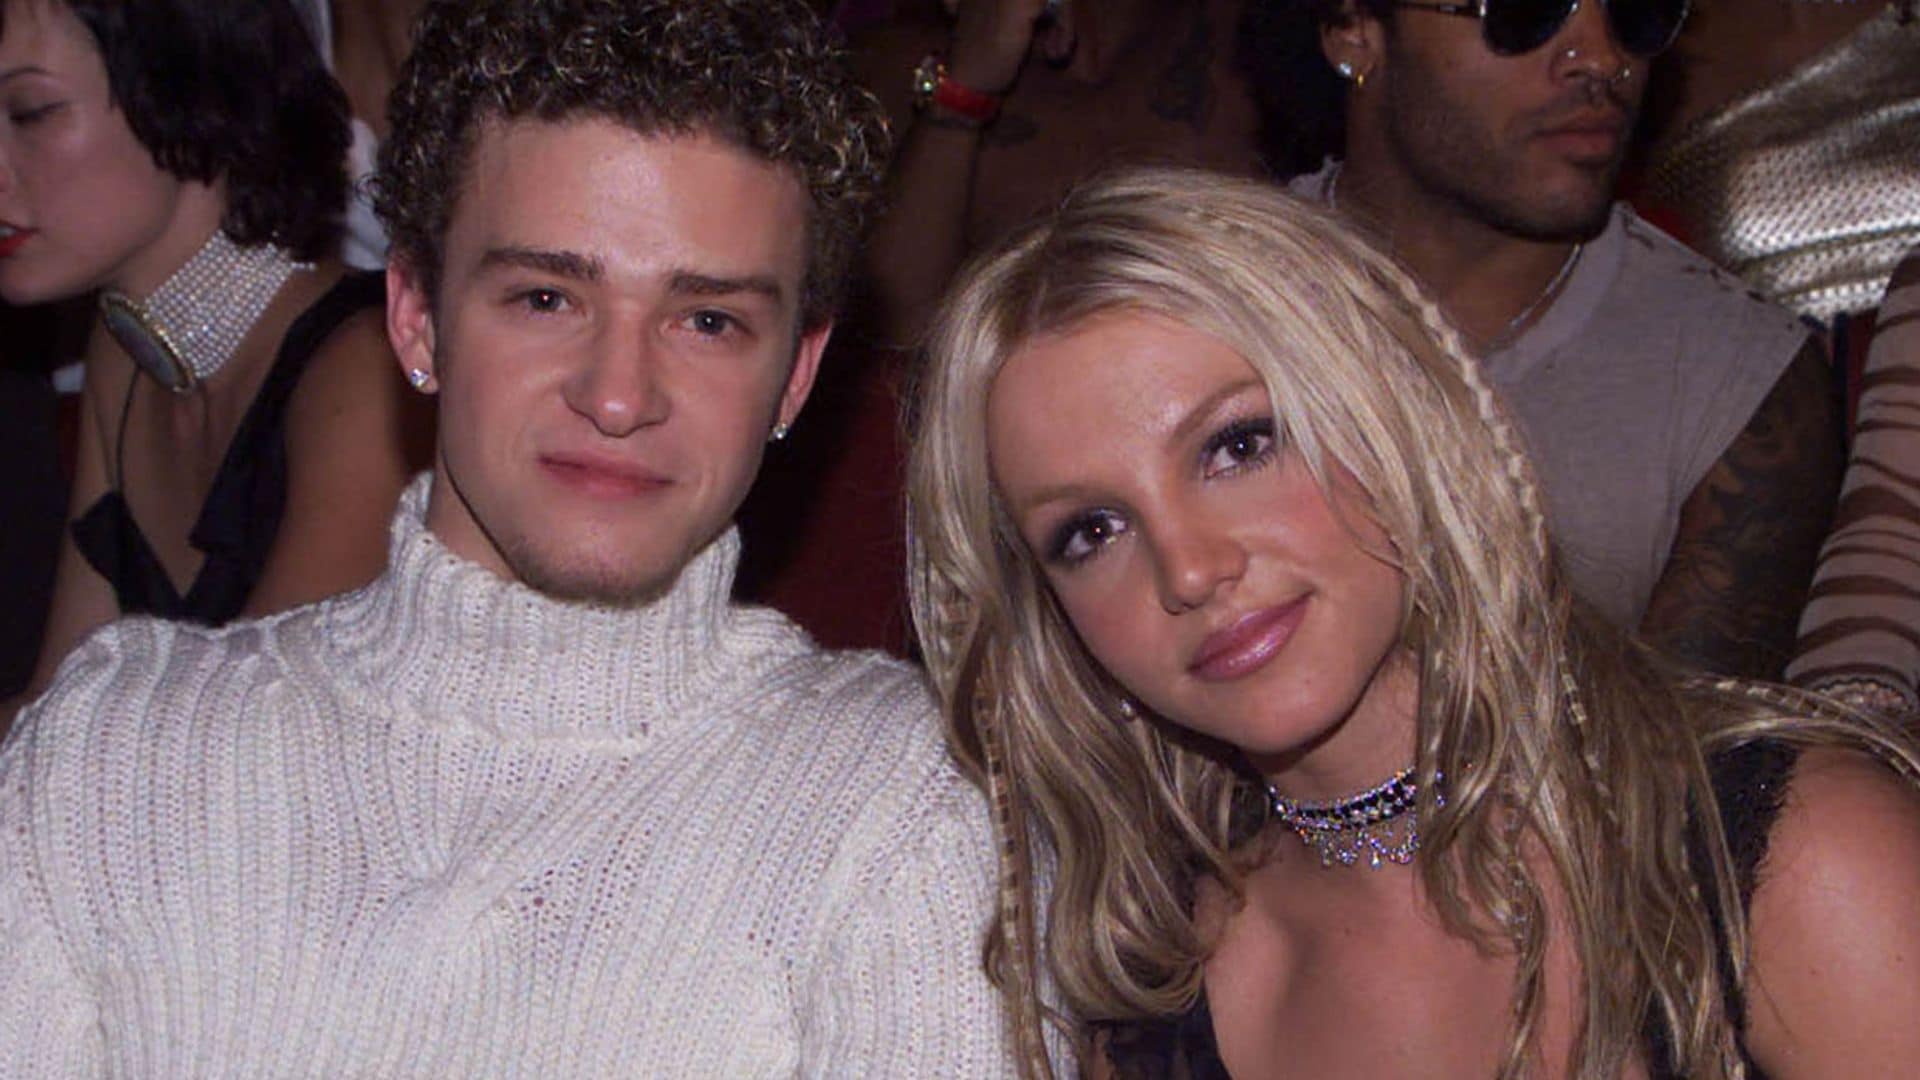 Lo que ahora sabemos de la relación de Britney Spears y Justin Timberlake, considerados durante años 'los novios de América'